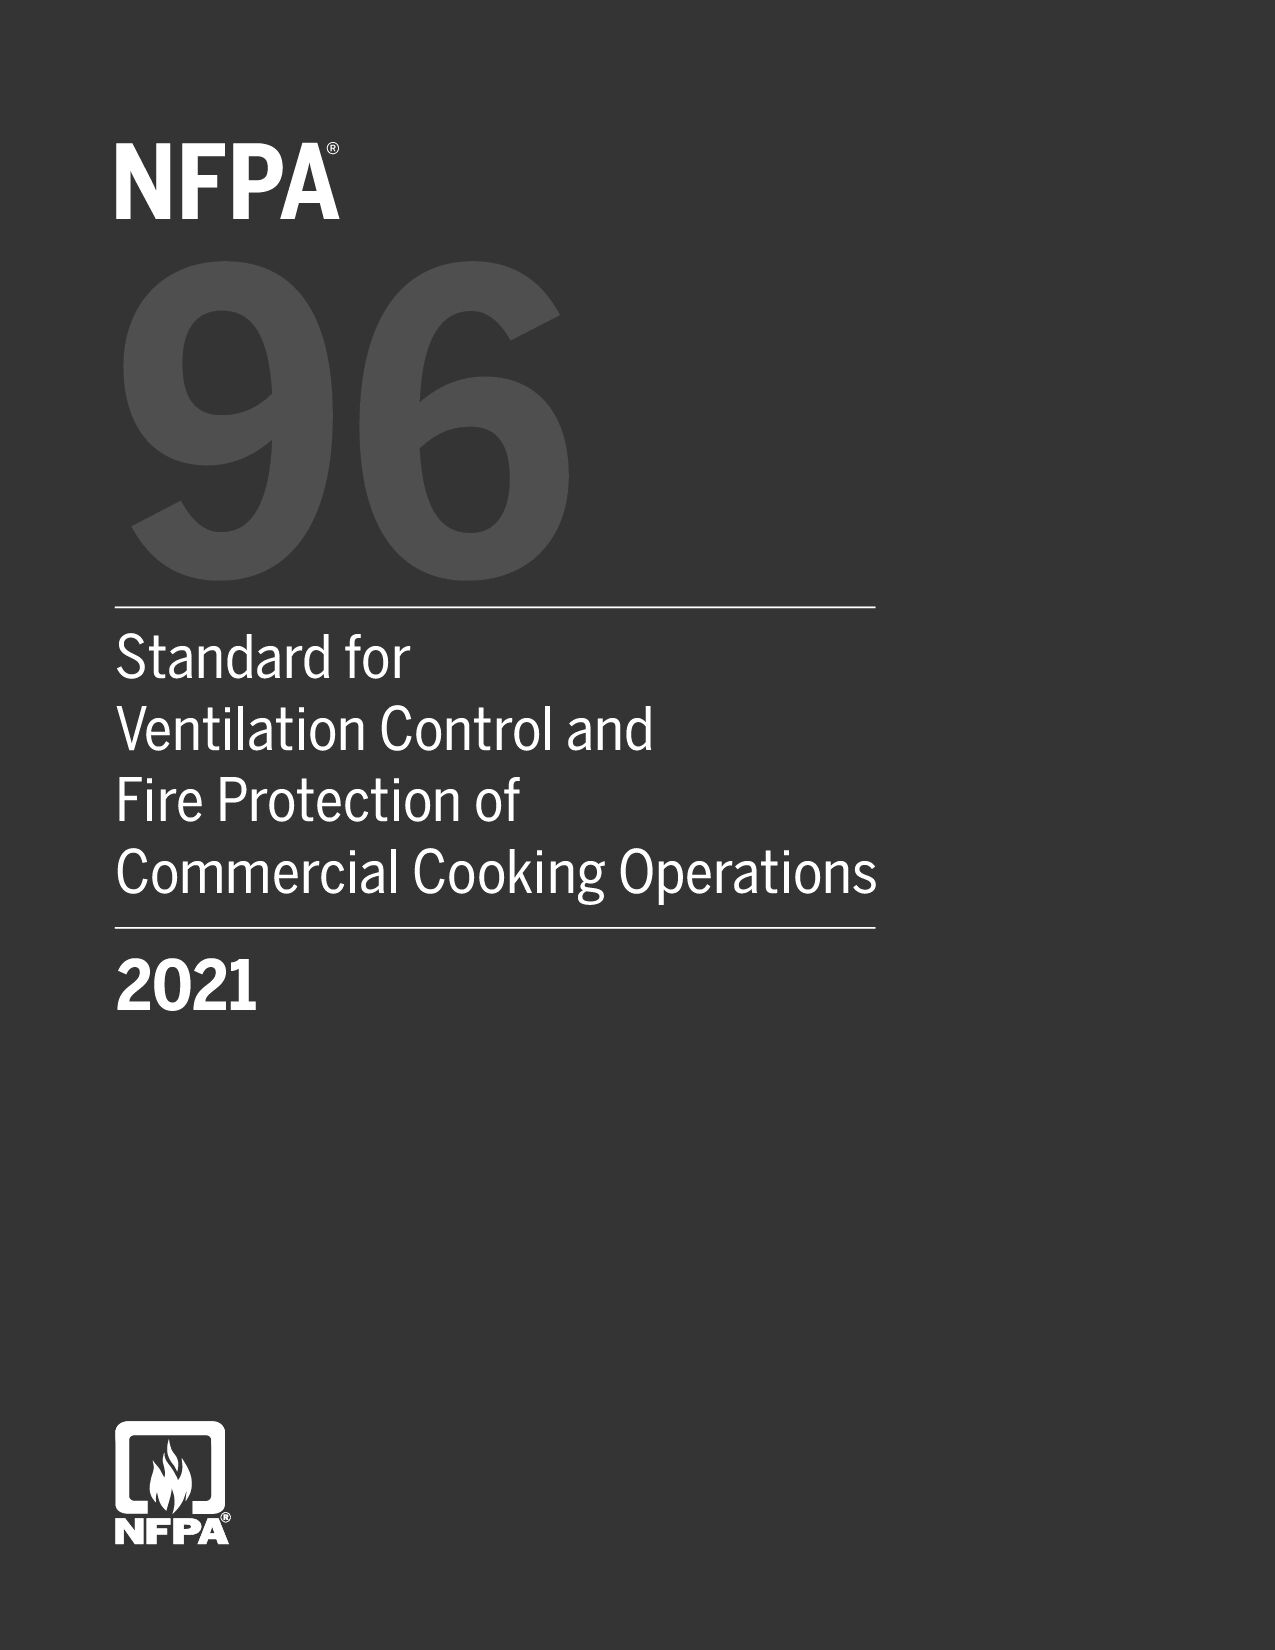 NFPA 96-2021